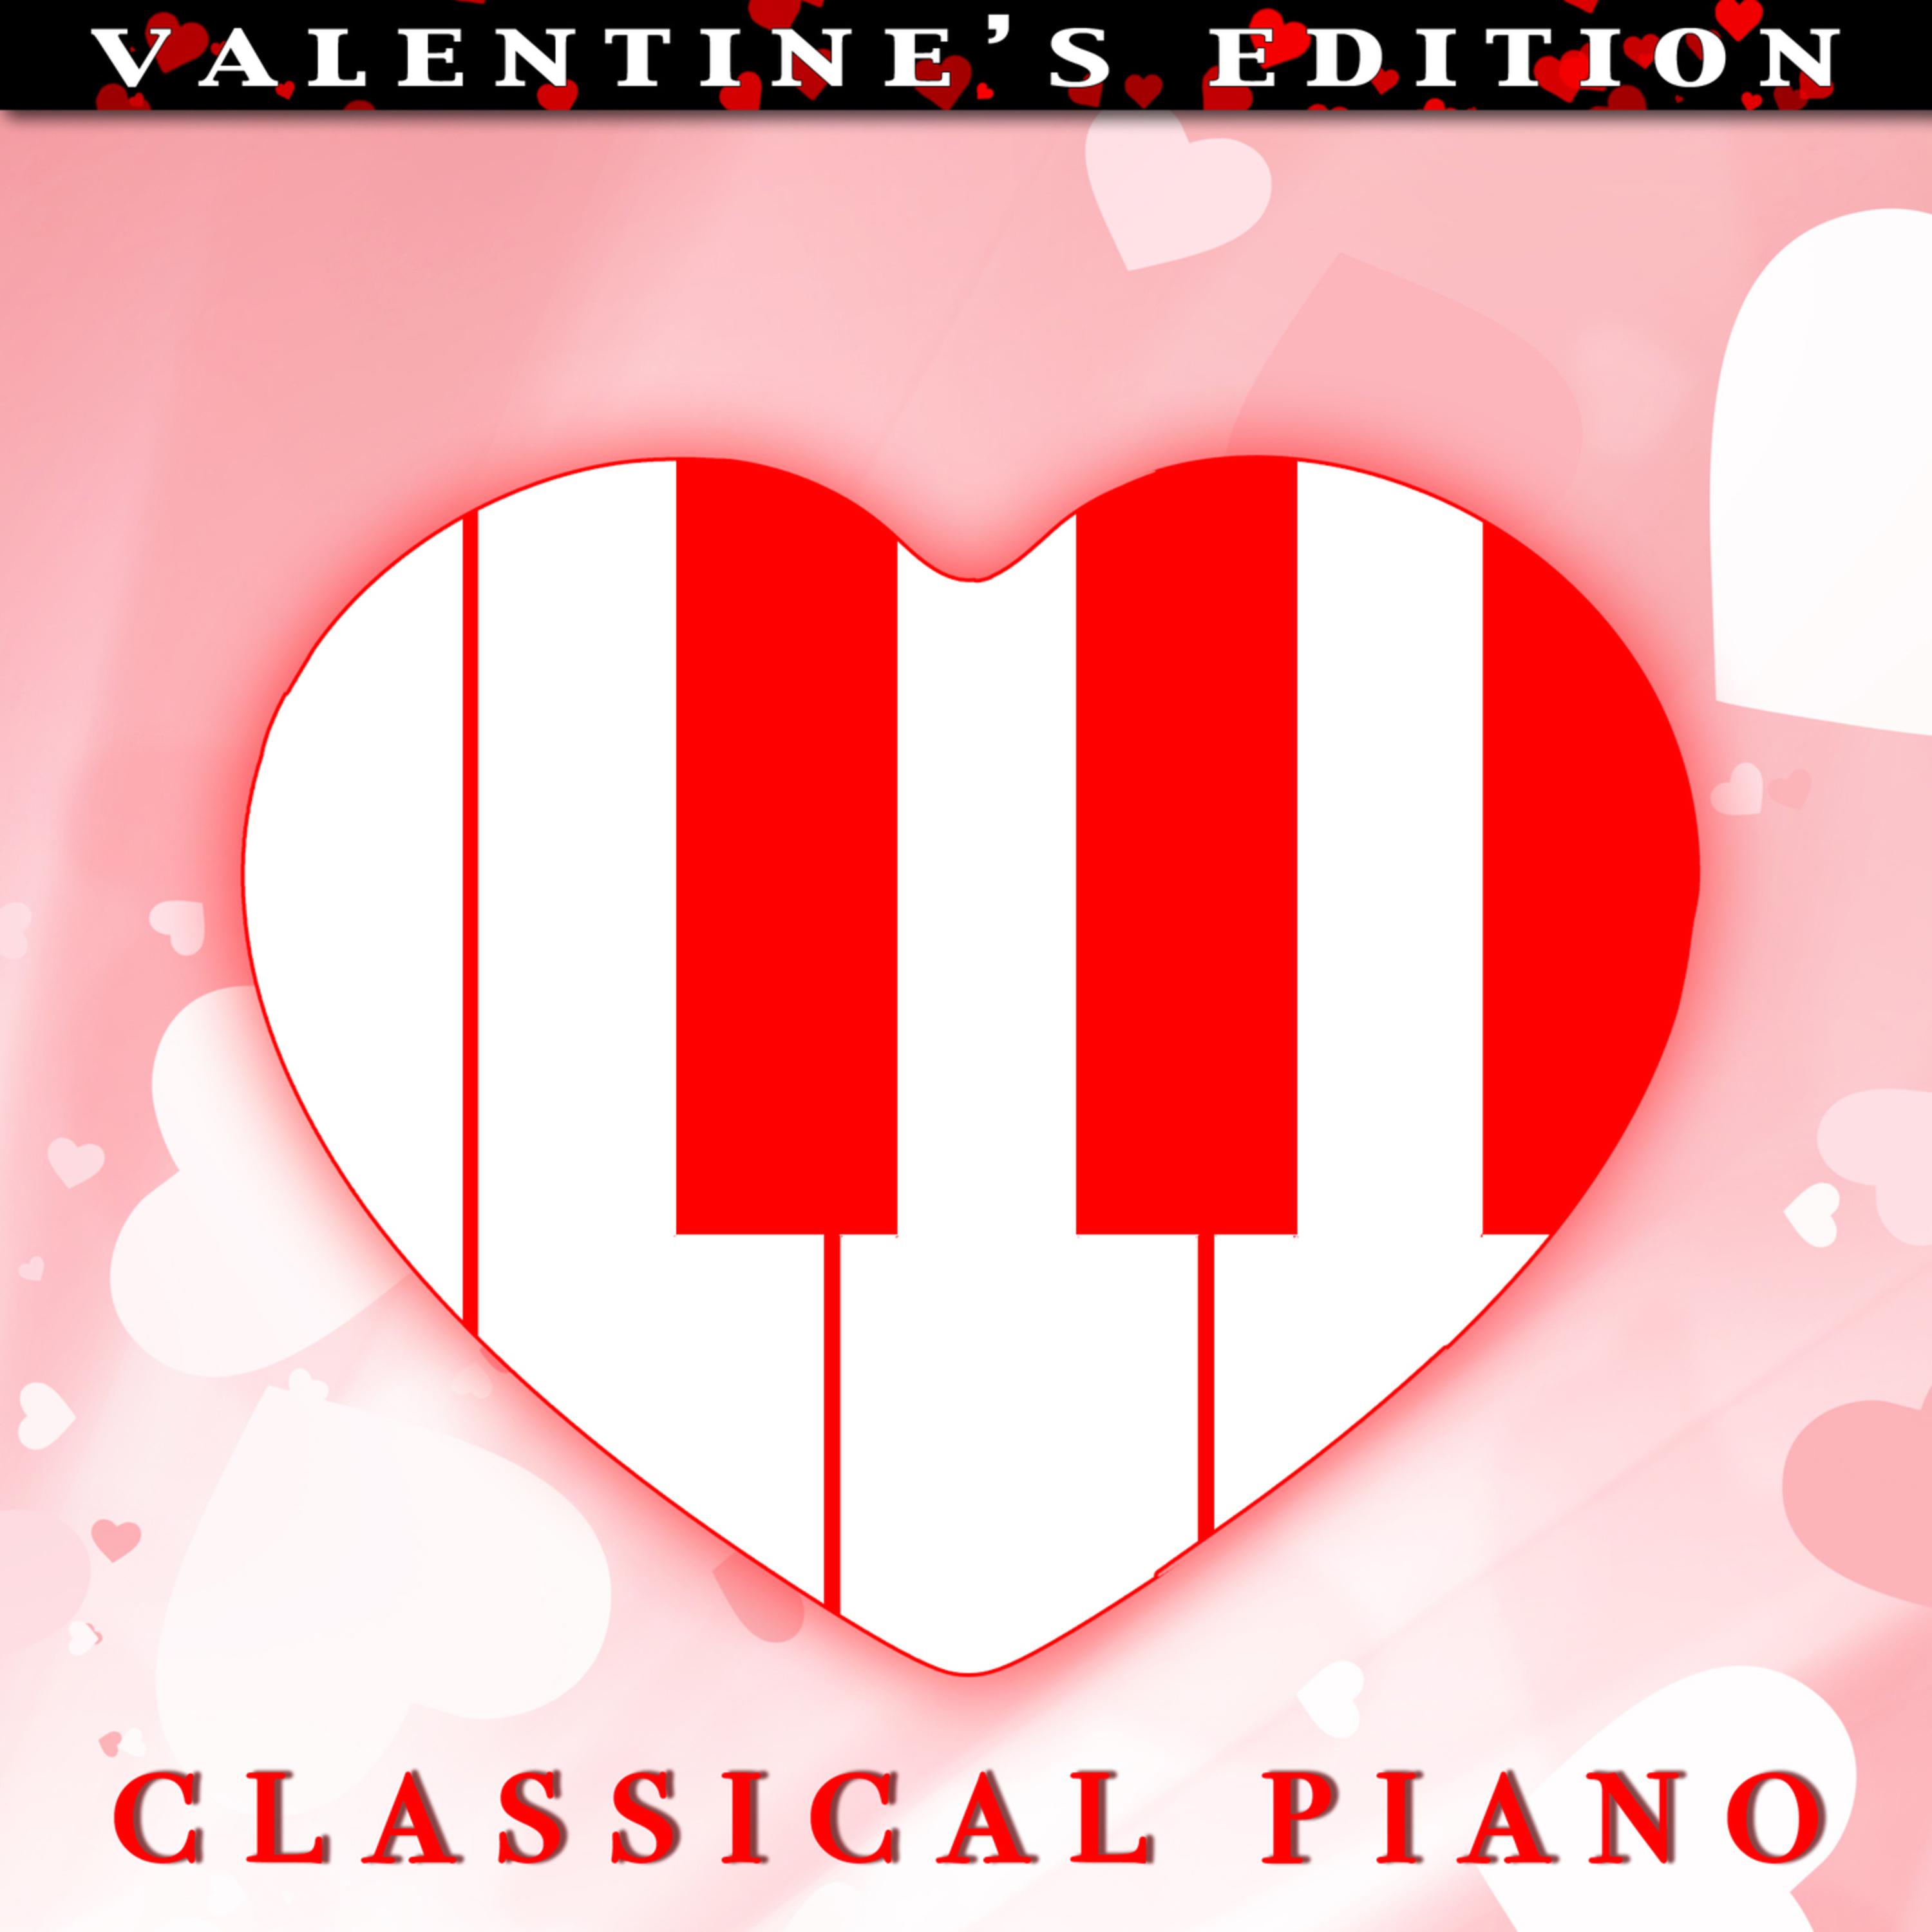 Valentine's Edition Classical Piano